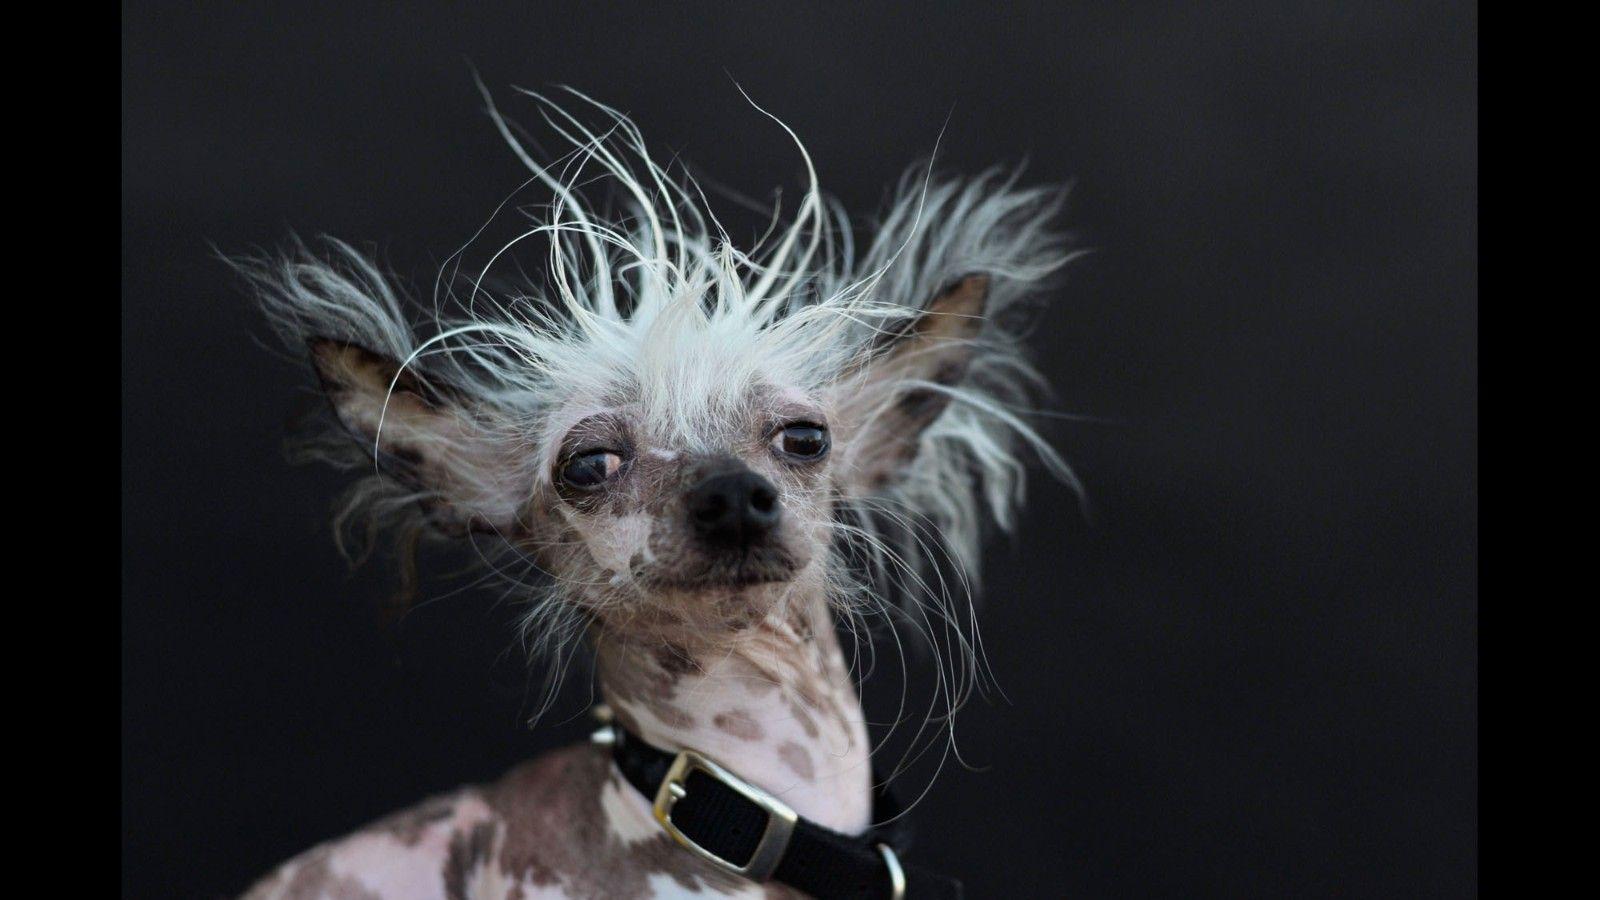 Meet the world's ugliest dog